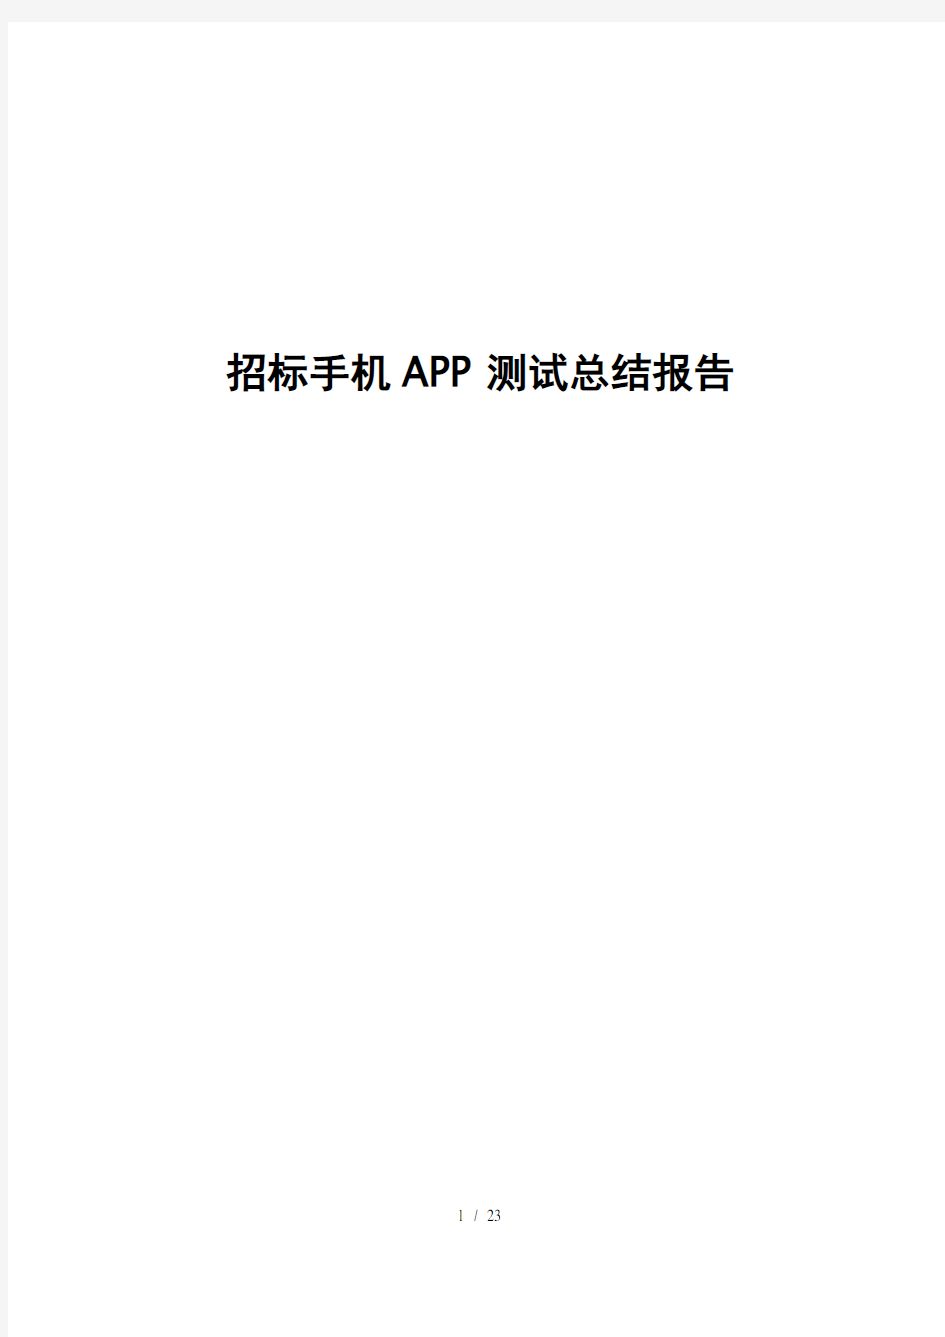 手机APP测试报告模板【完整版】